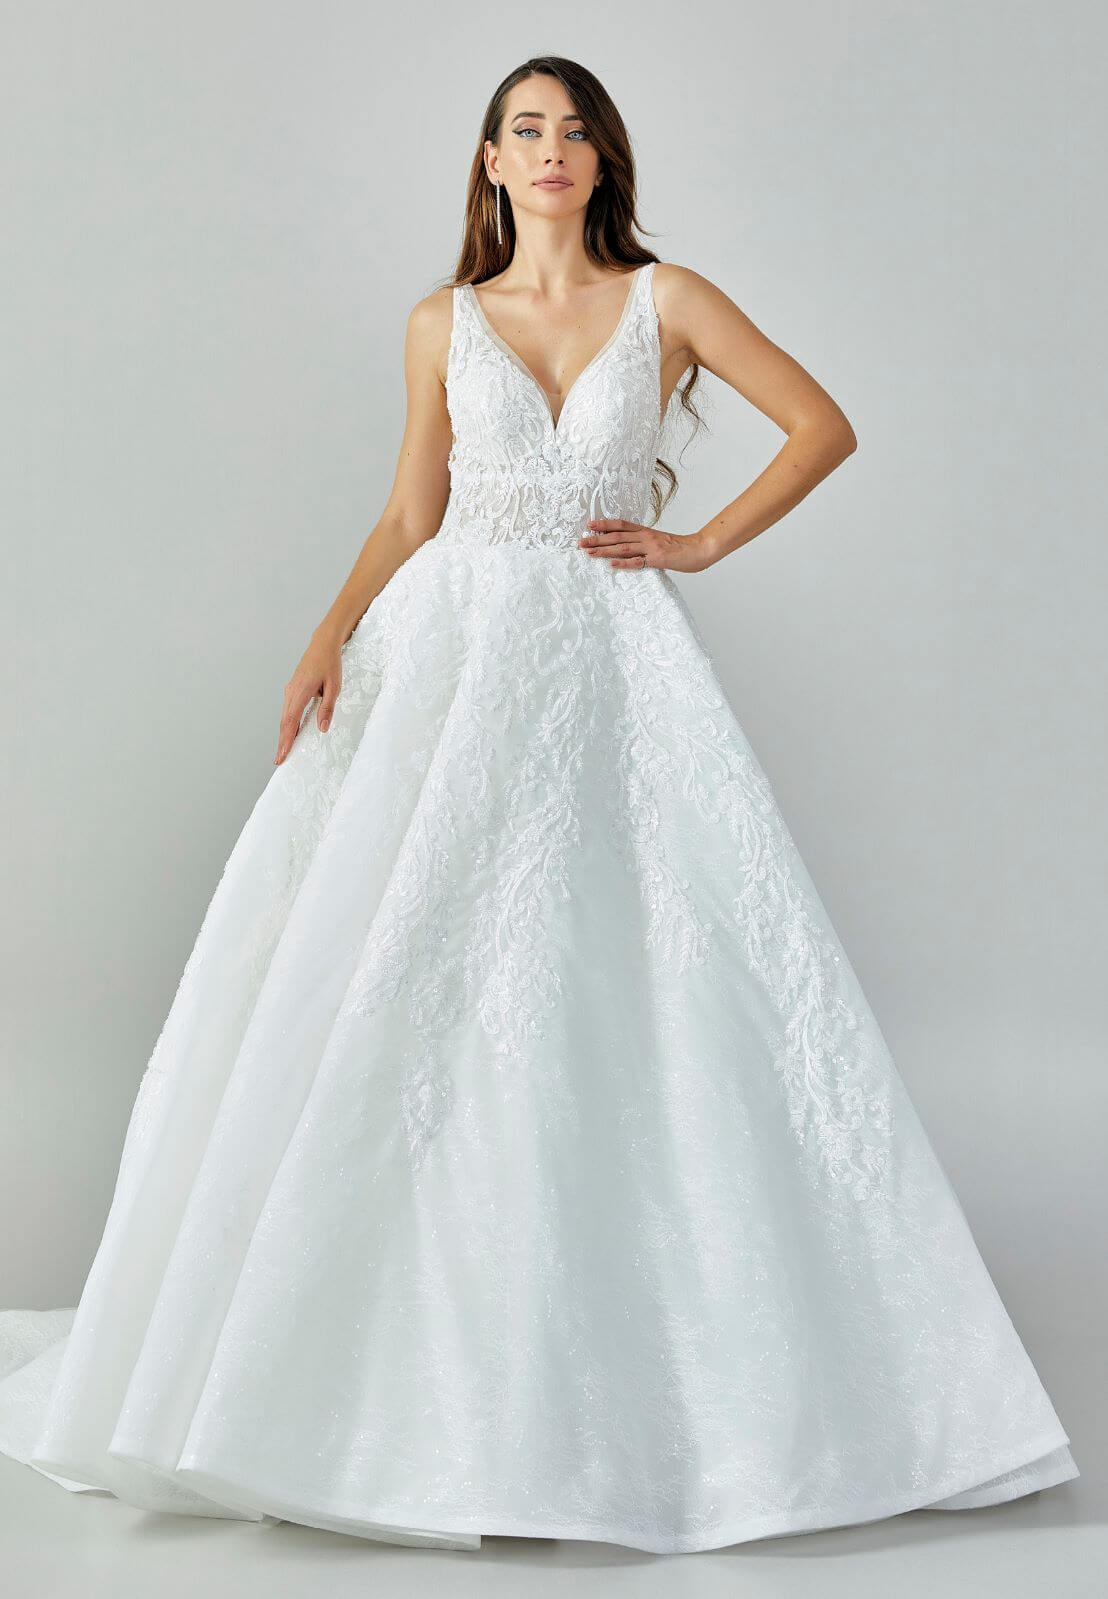 GAJ Gelinlik Couture Sleeveless Maxi Lace Regular White Wedding Dress